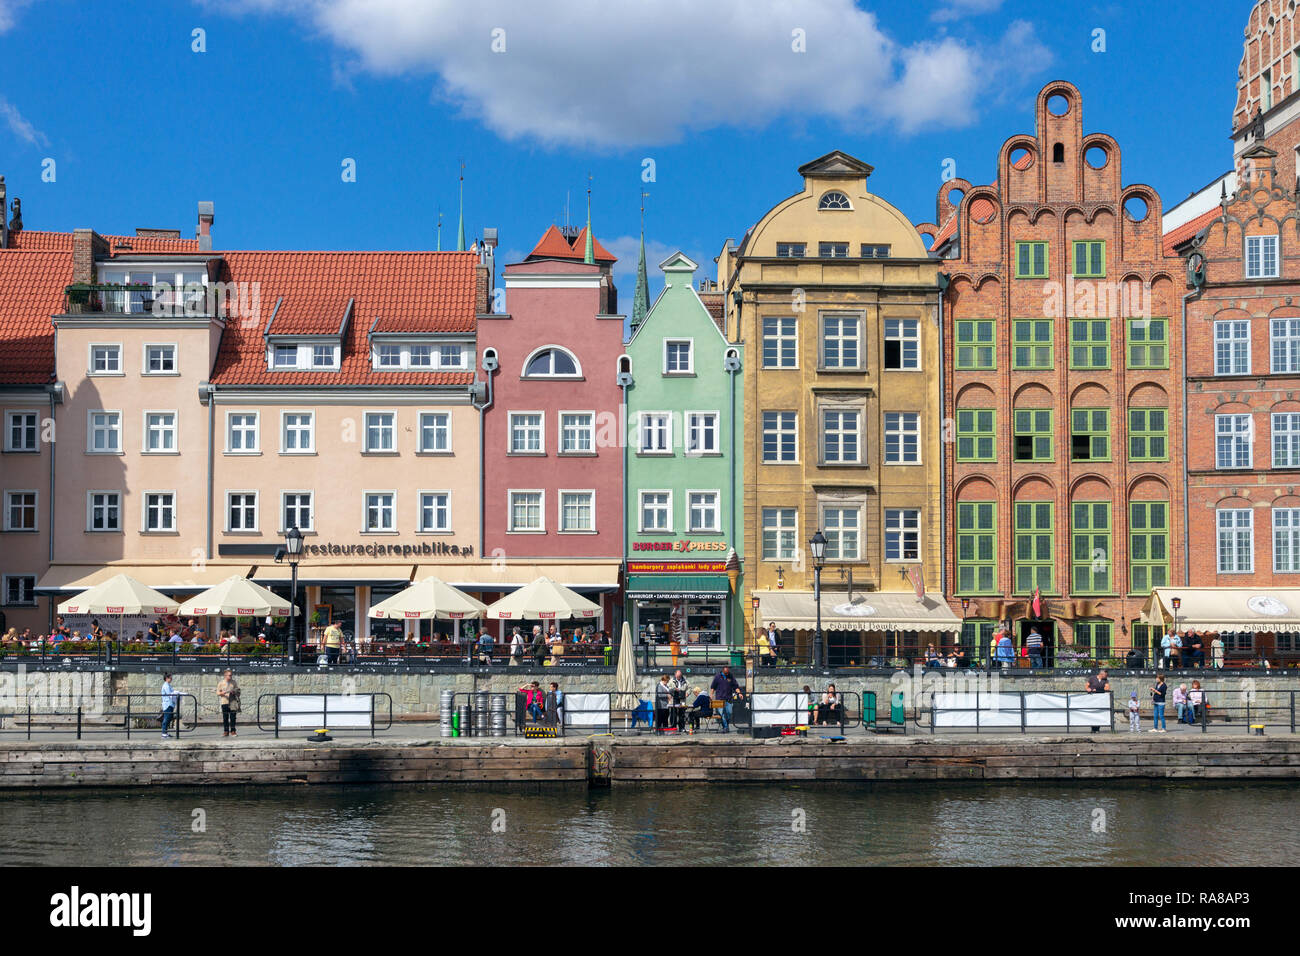 GDANSK, Pologne - 21 août 2014 : Panorama de Gdansk. La ville est la capitale historique de la Polish occidentale avec l'architecture de la vieille ville médiévale. Banque D'Images